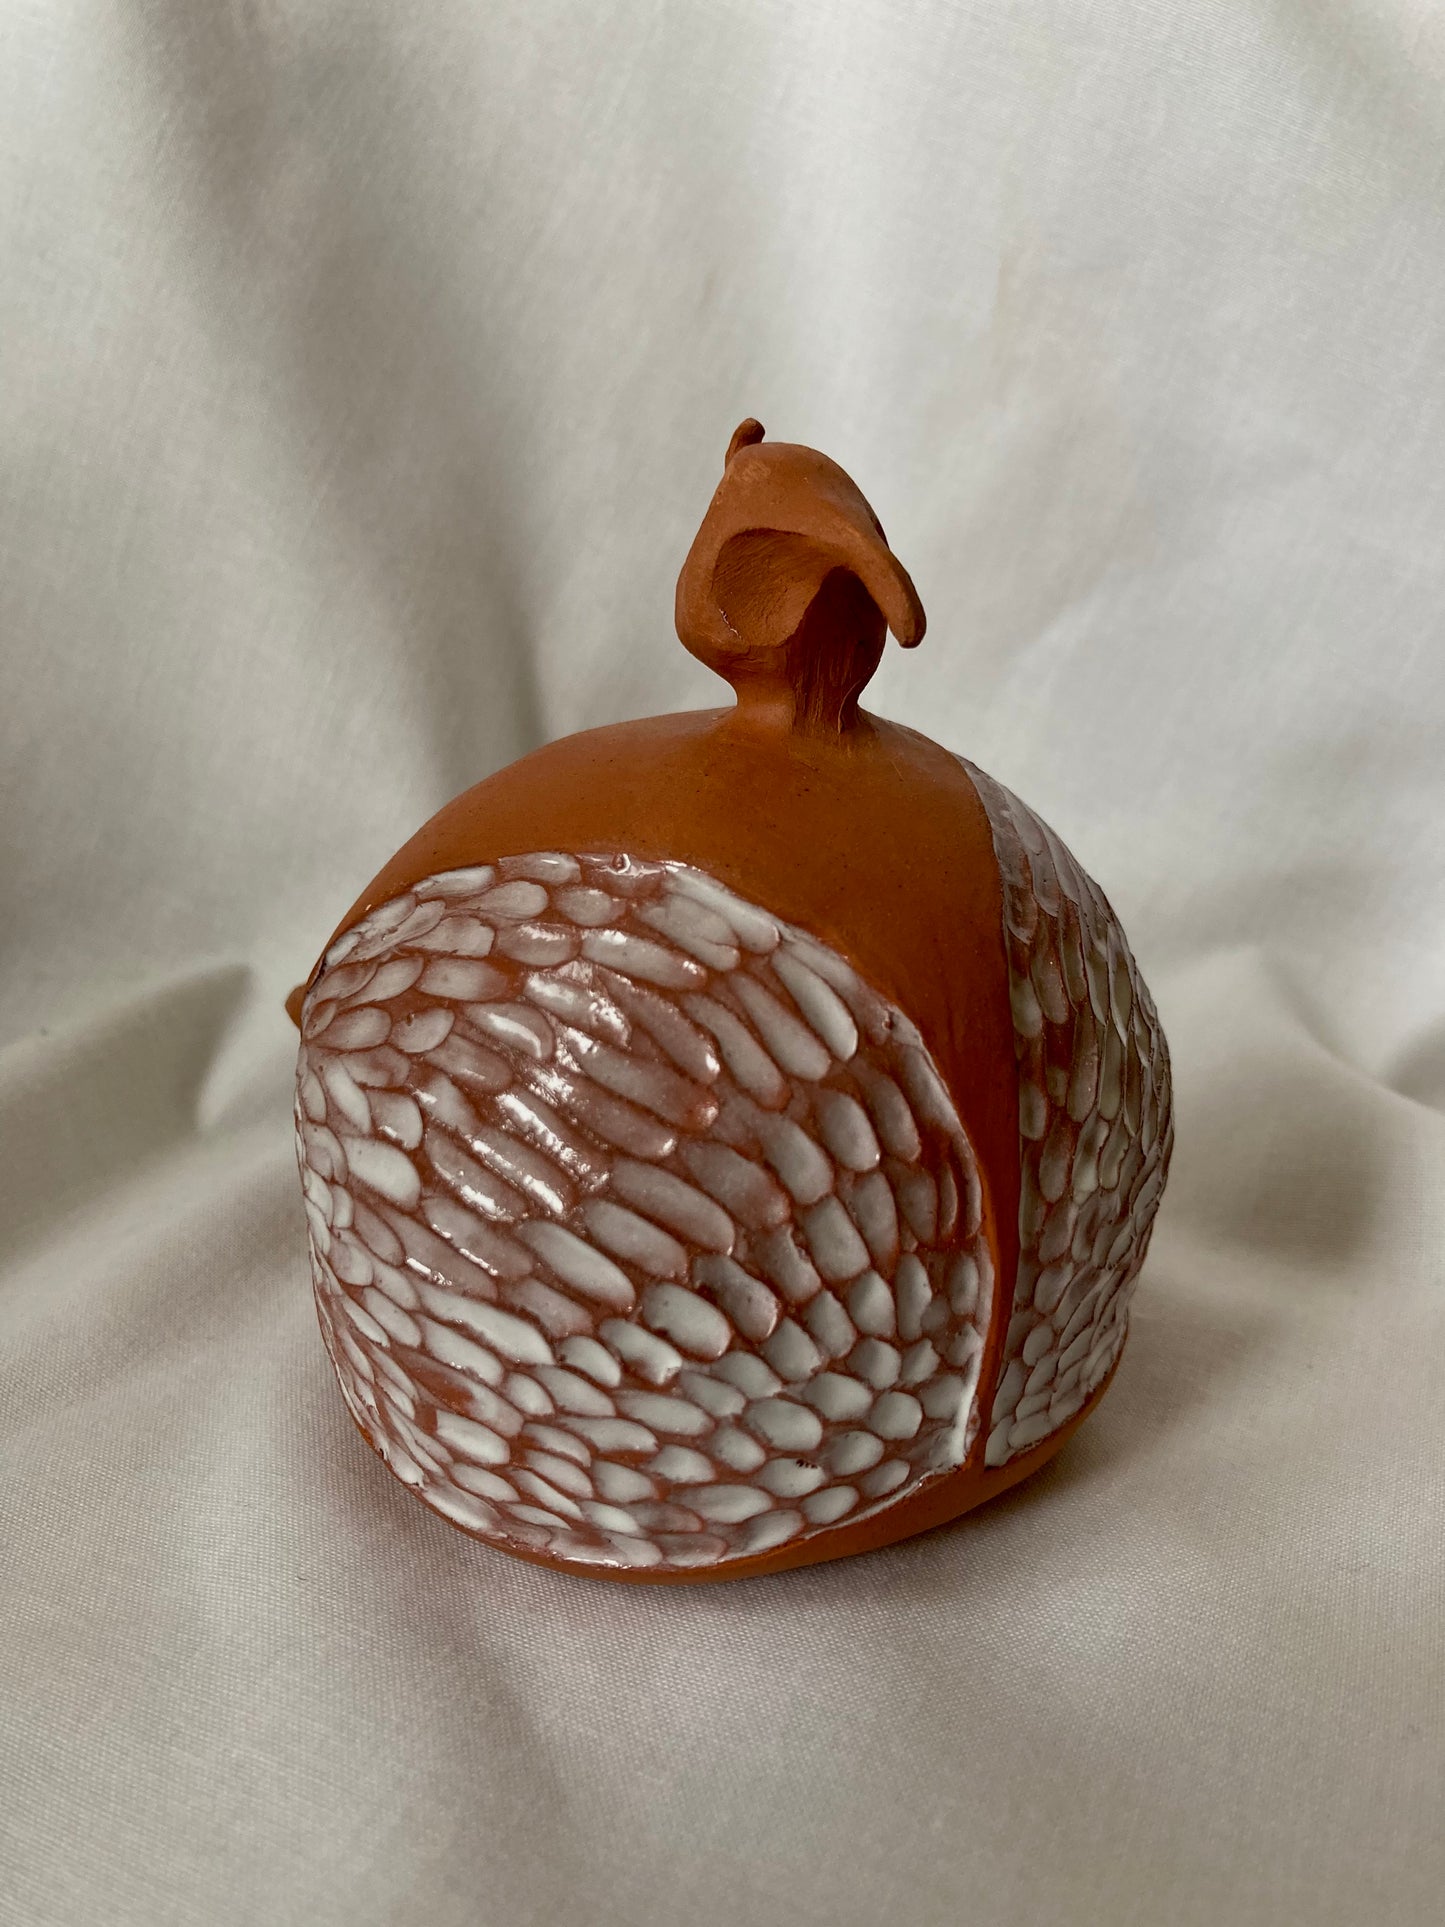 Unique Terracotta clay ceramic sculpture